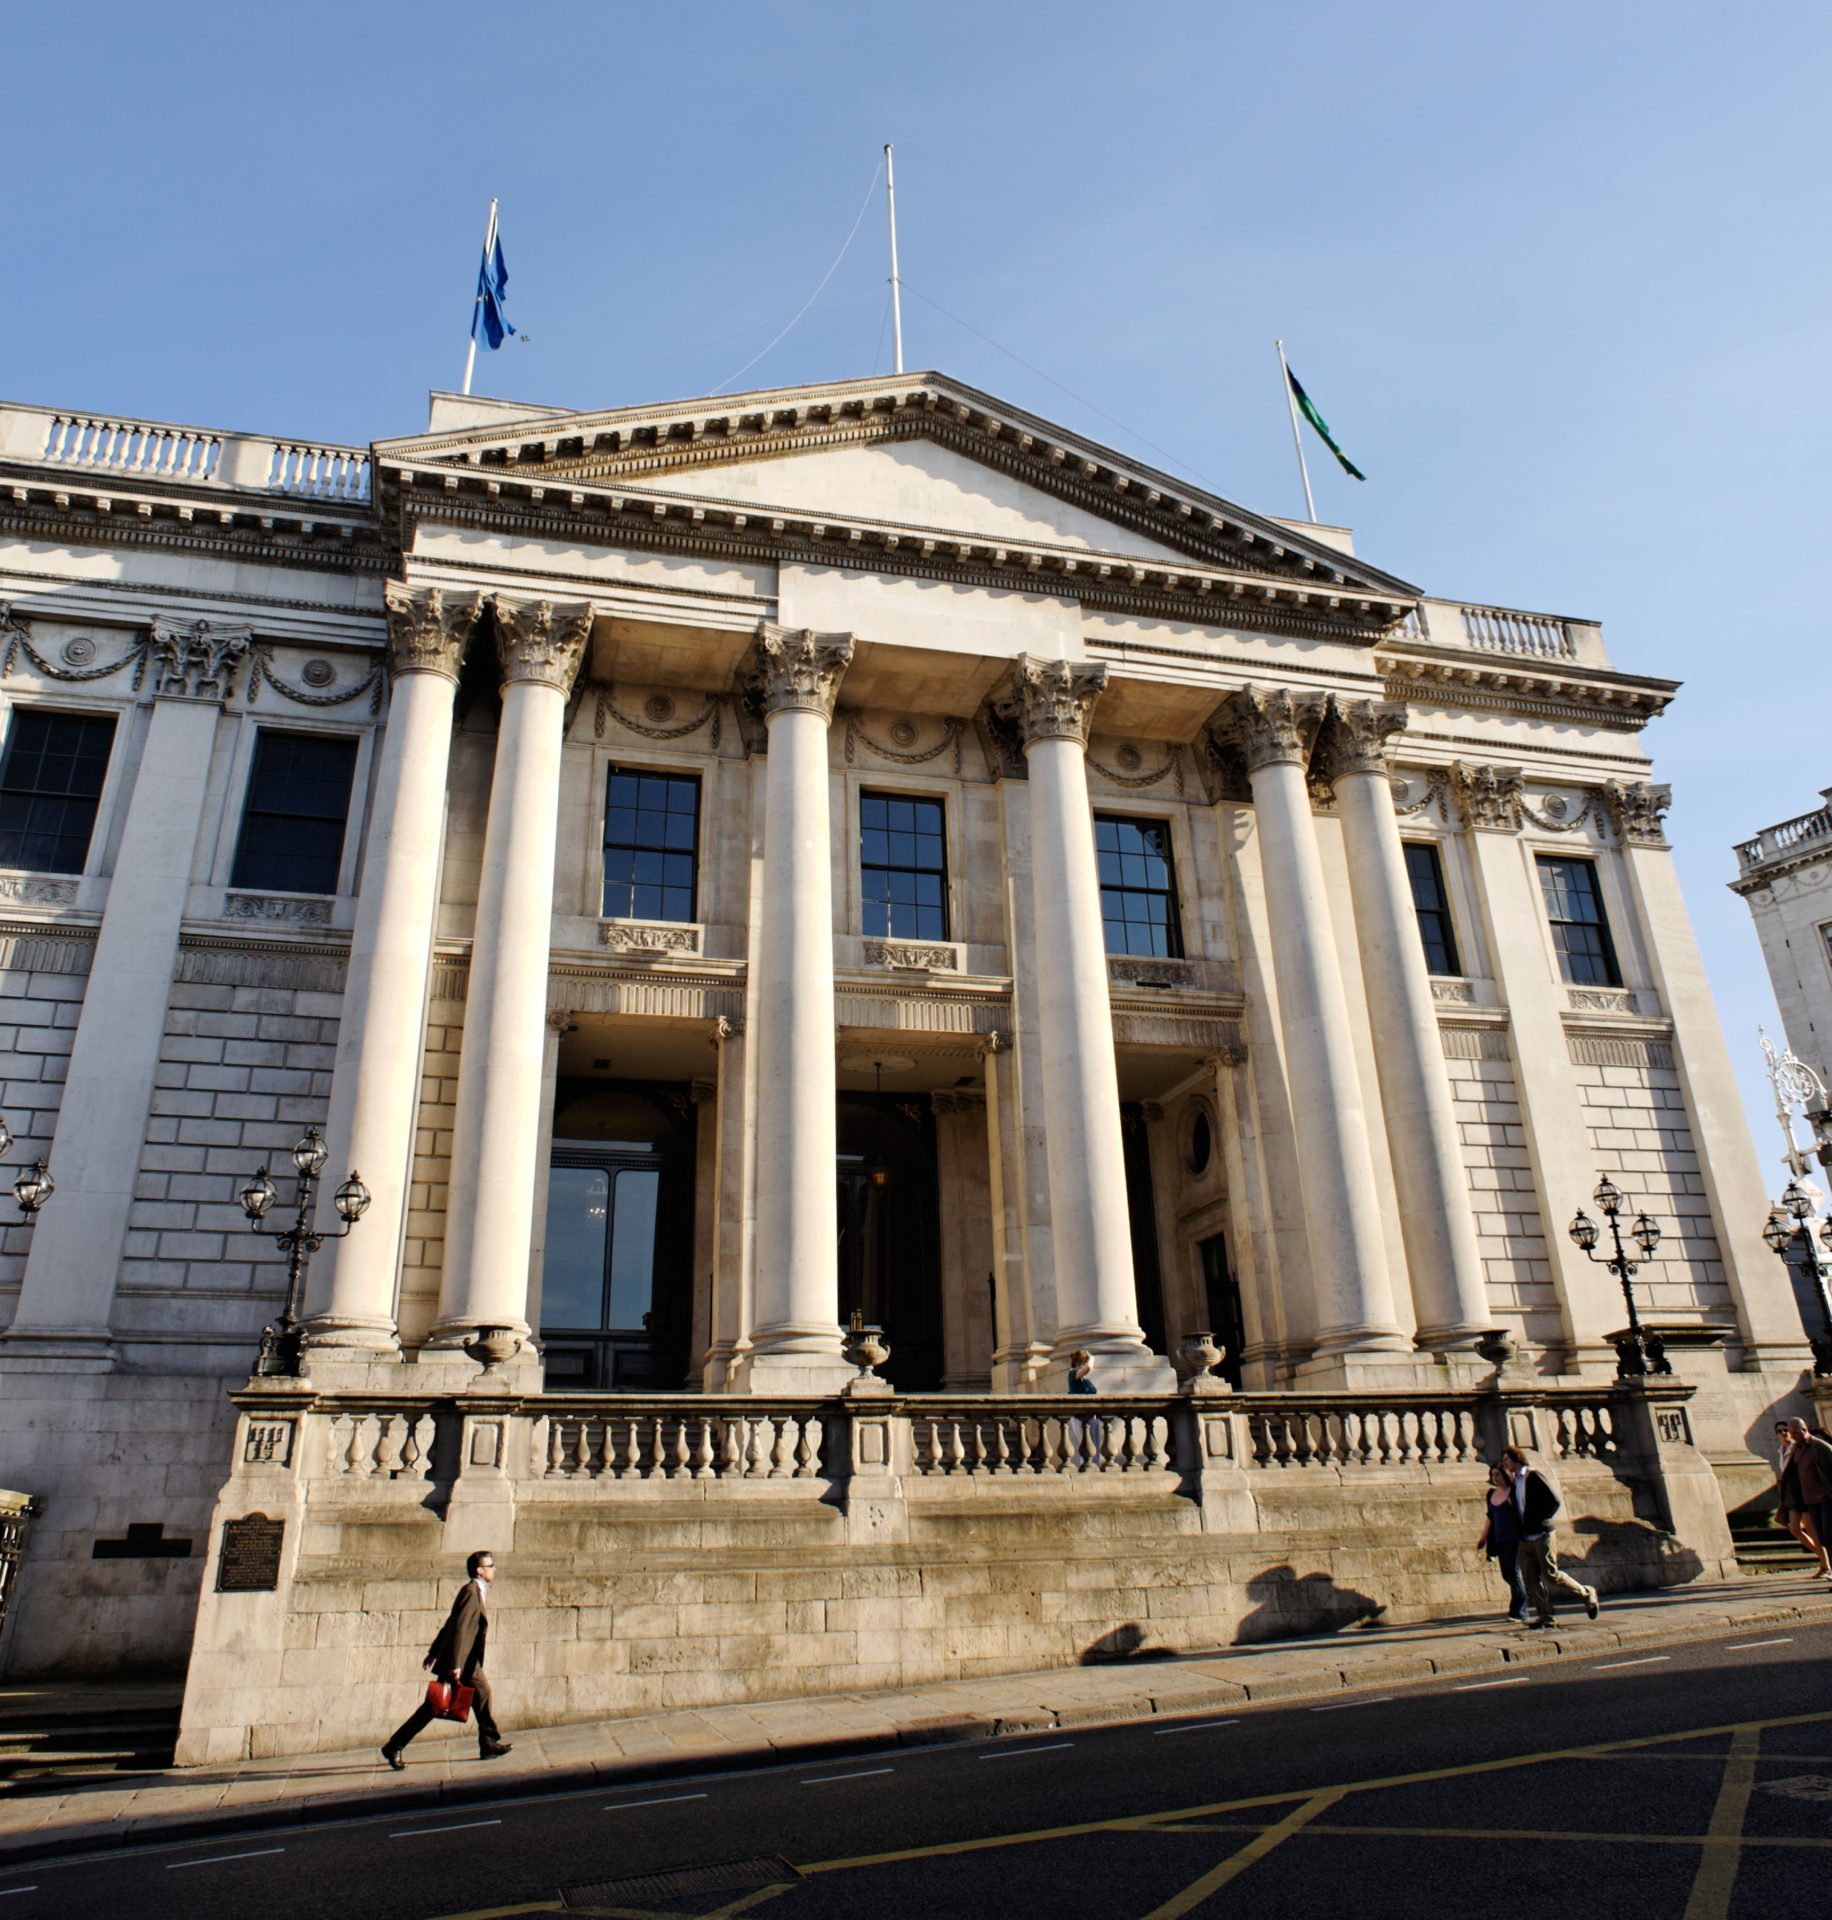 Dublin City Hall is seen on Parliament Street. 